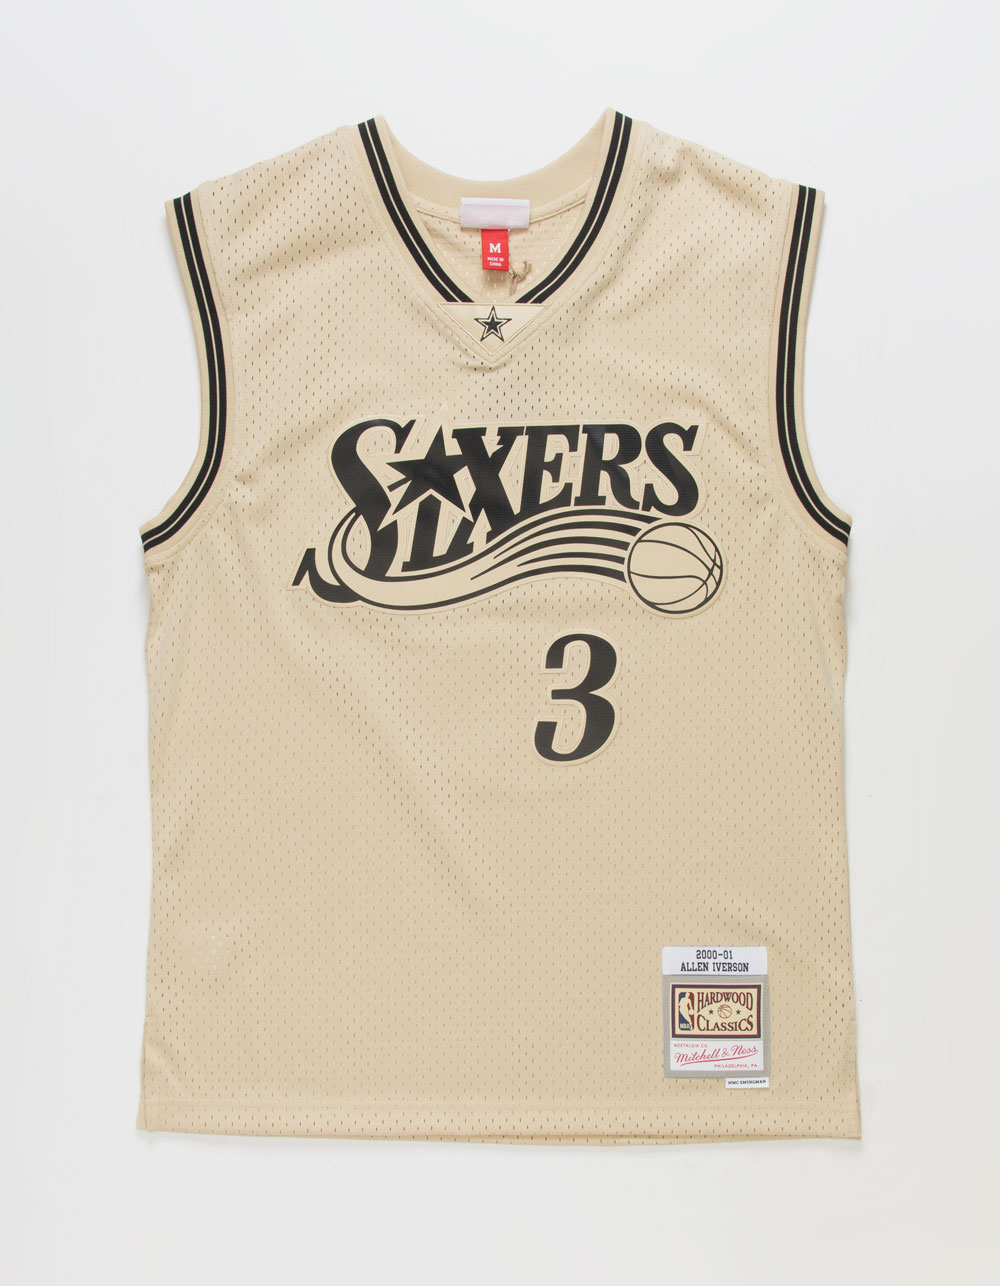 NBA, Shirts, Allen Iverson 76ers Nba Jersey